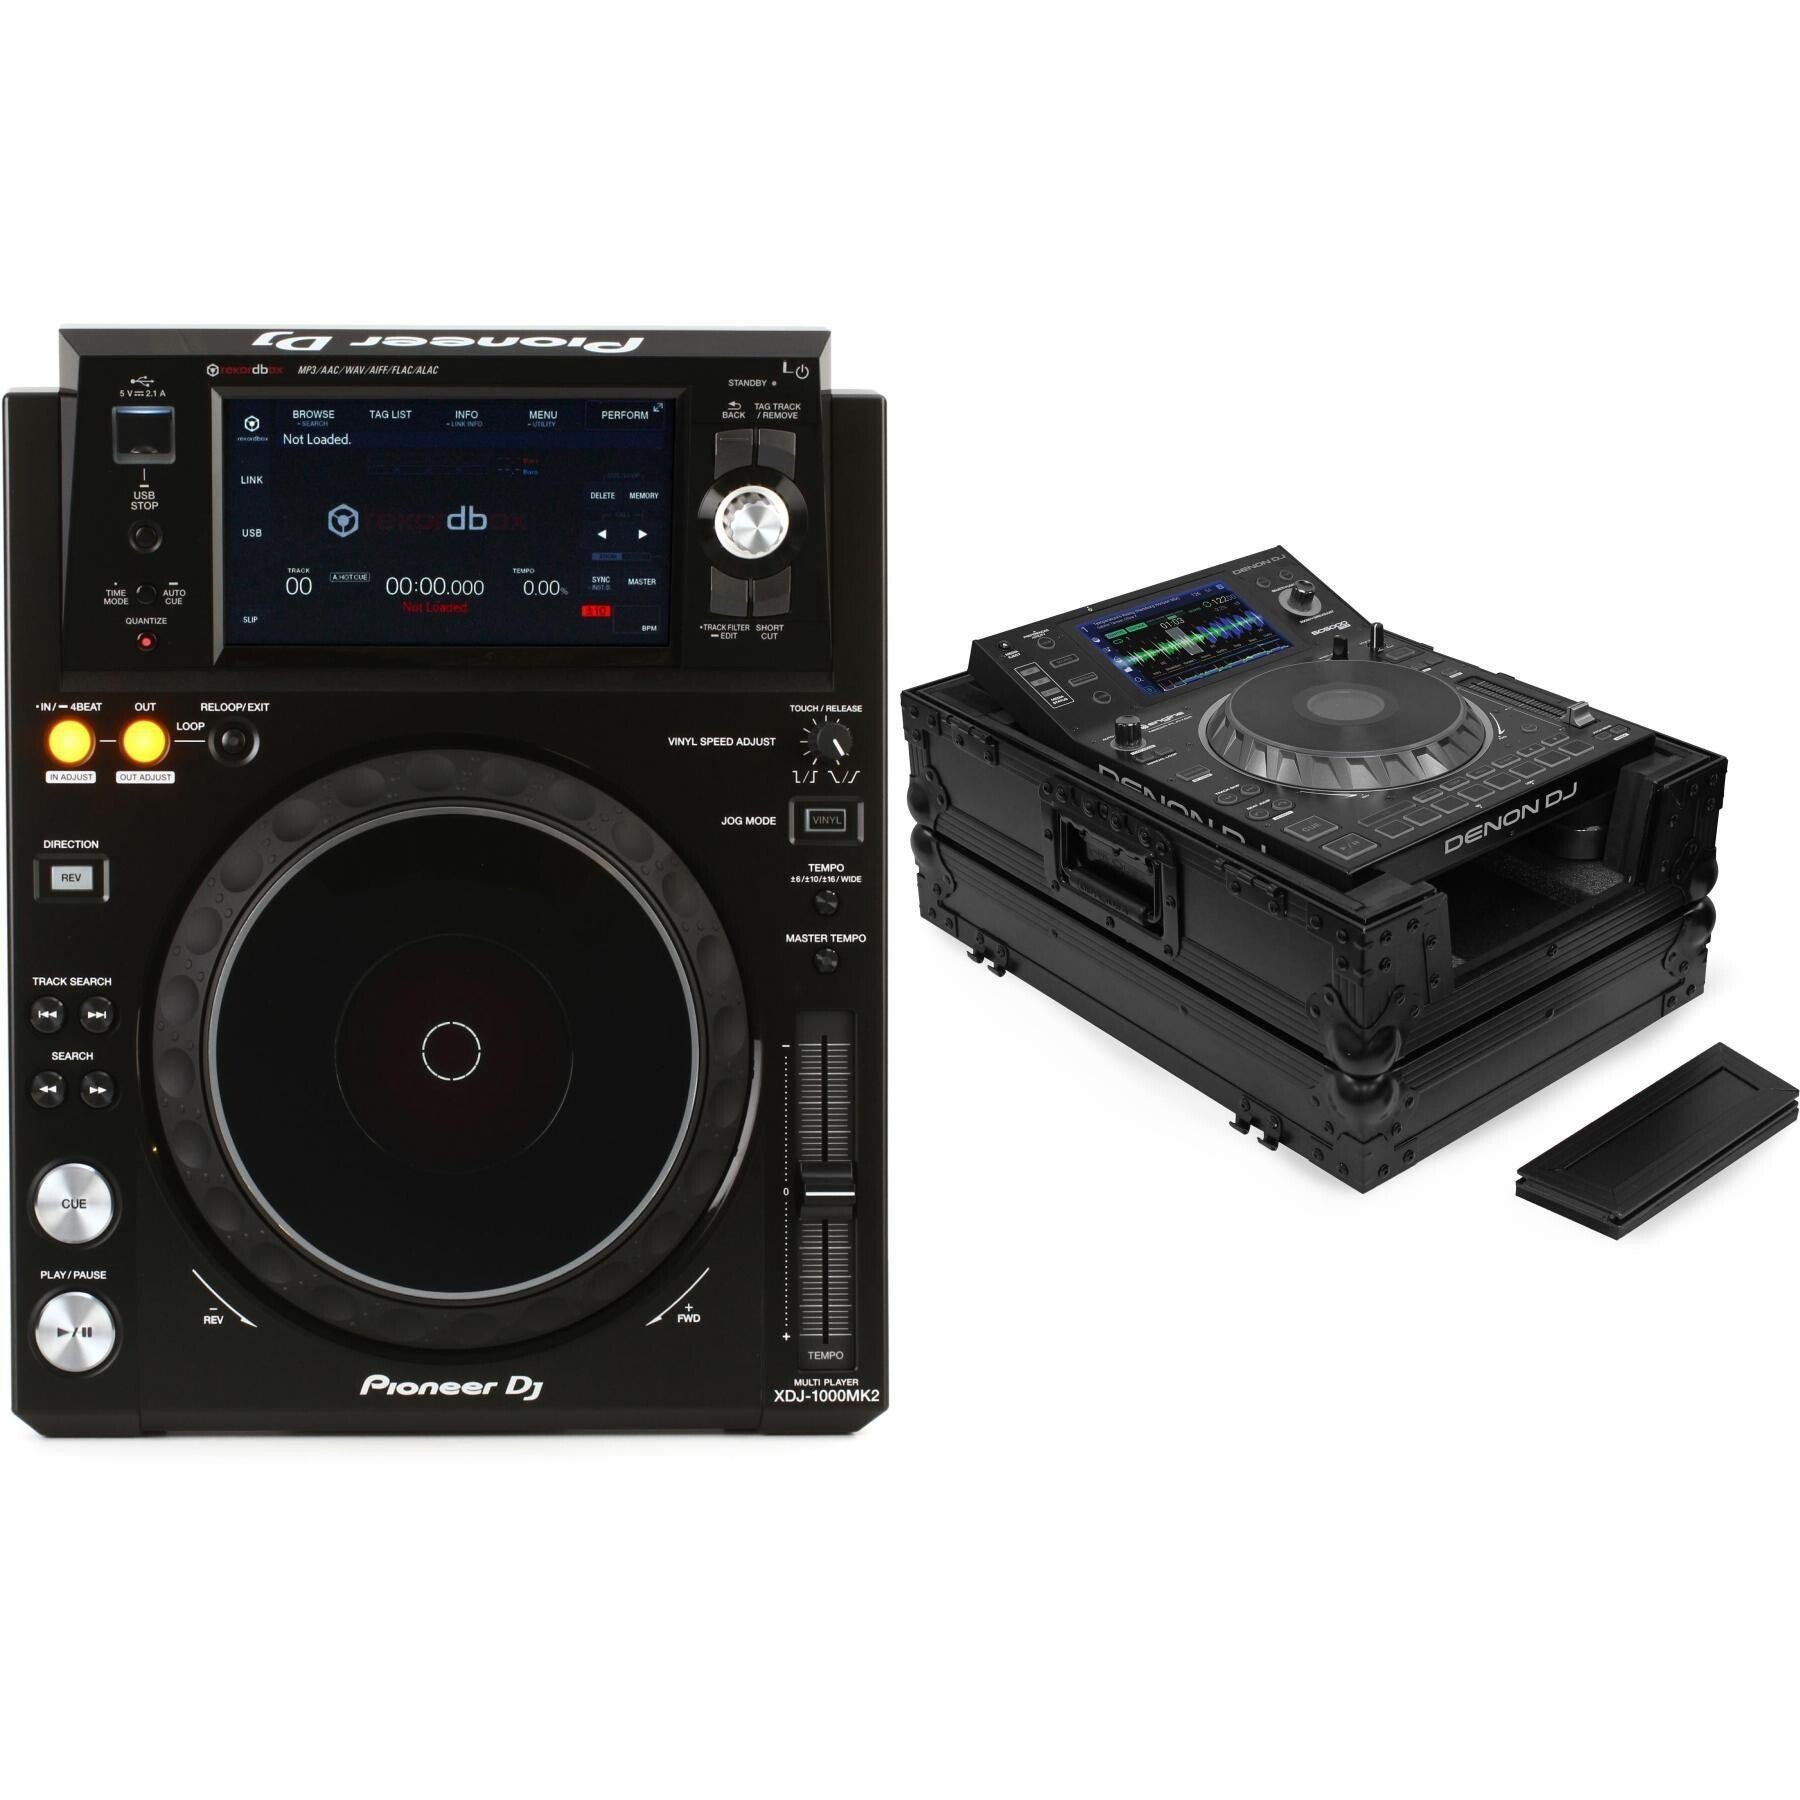 Pioneer DJ XDJ-1000MK2 Digital Performance DJ Media Player and